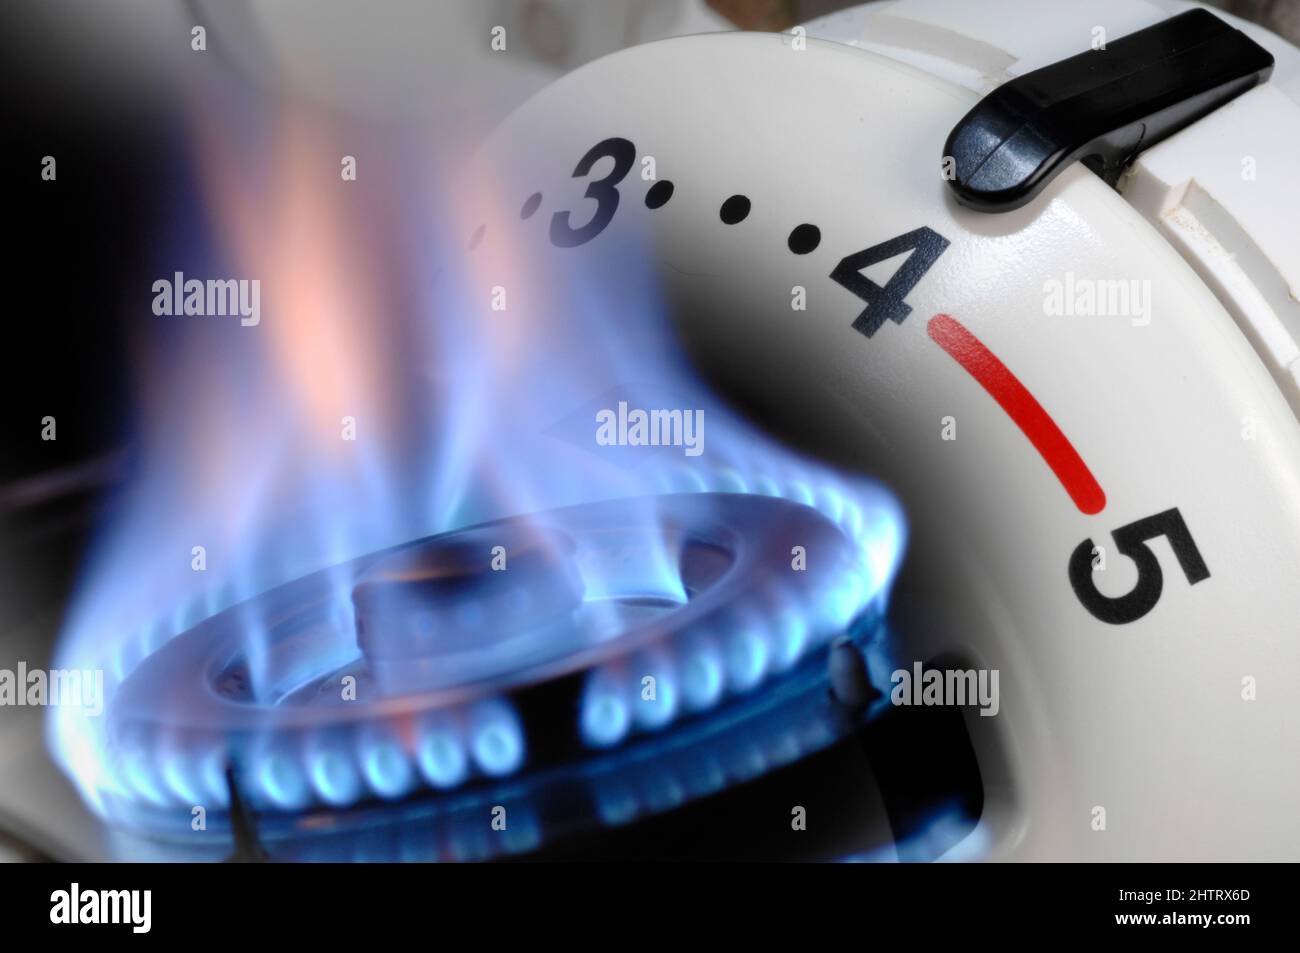 Steigende Energiekosten mit Gaspreis und Heizung Stock Photo